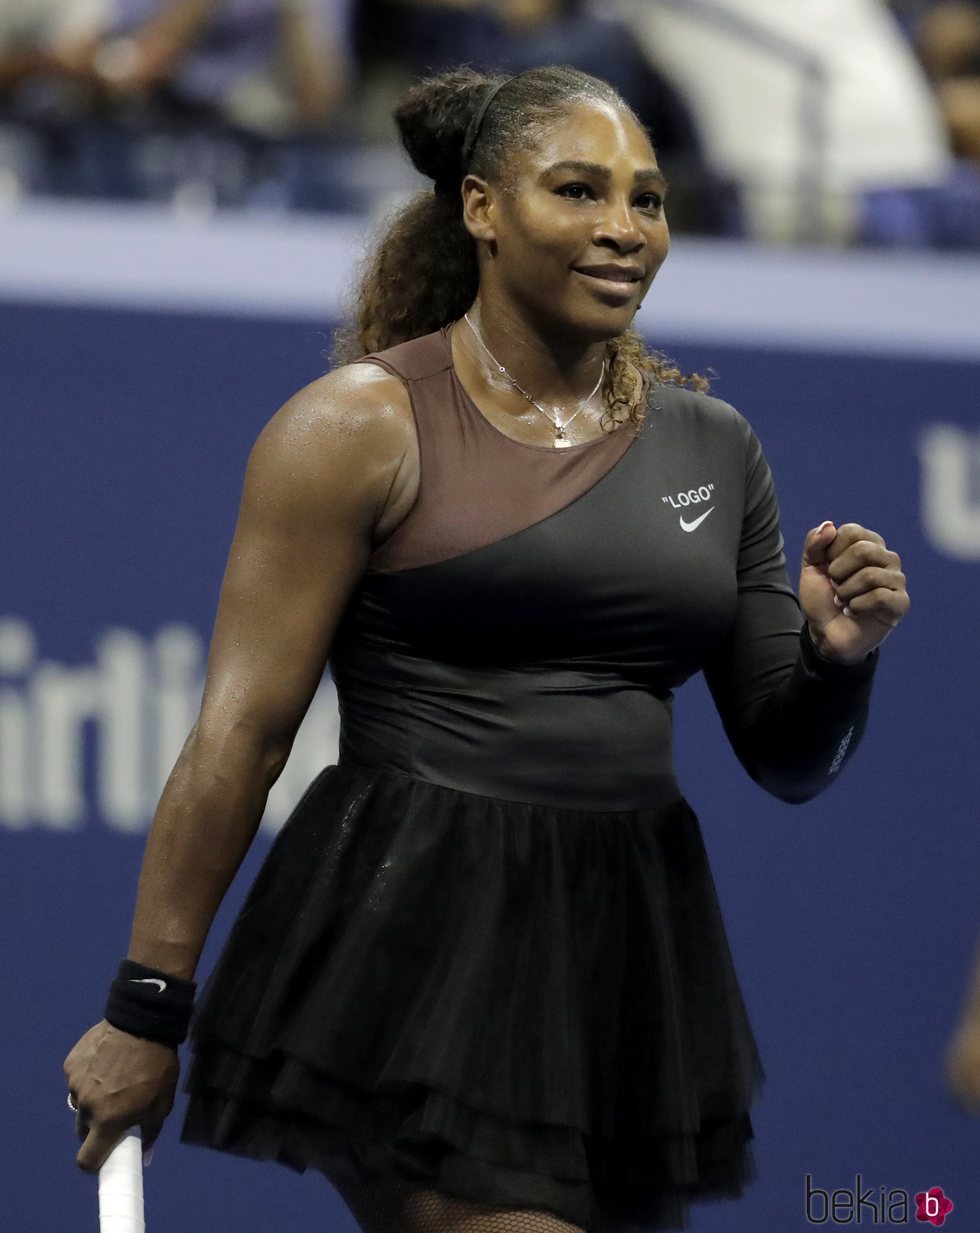 Serena Williams estrenando nueva indumentaria en el US Open 2018